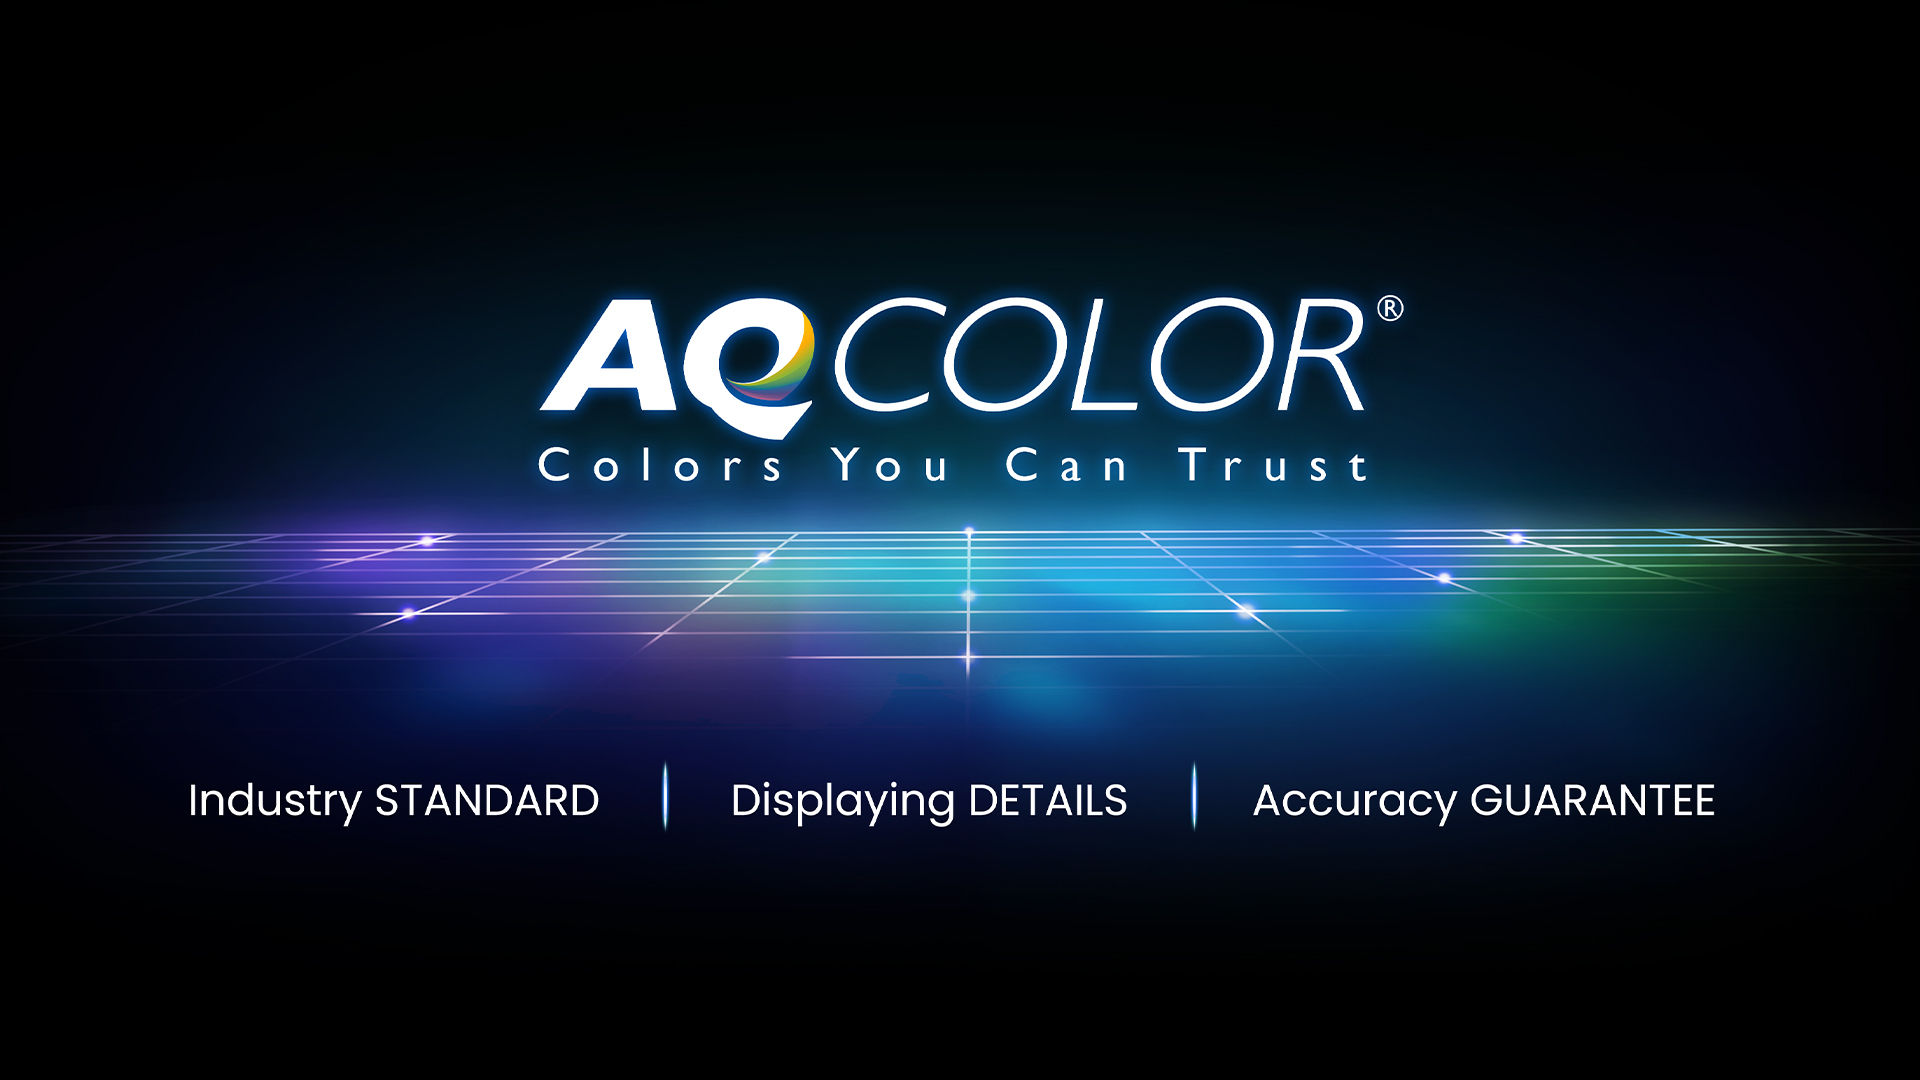 Die exklusive AQCOLOR Technologie von BenQ sorgt für akkurate Farben